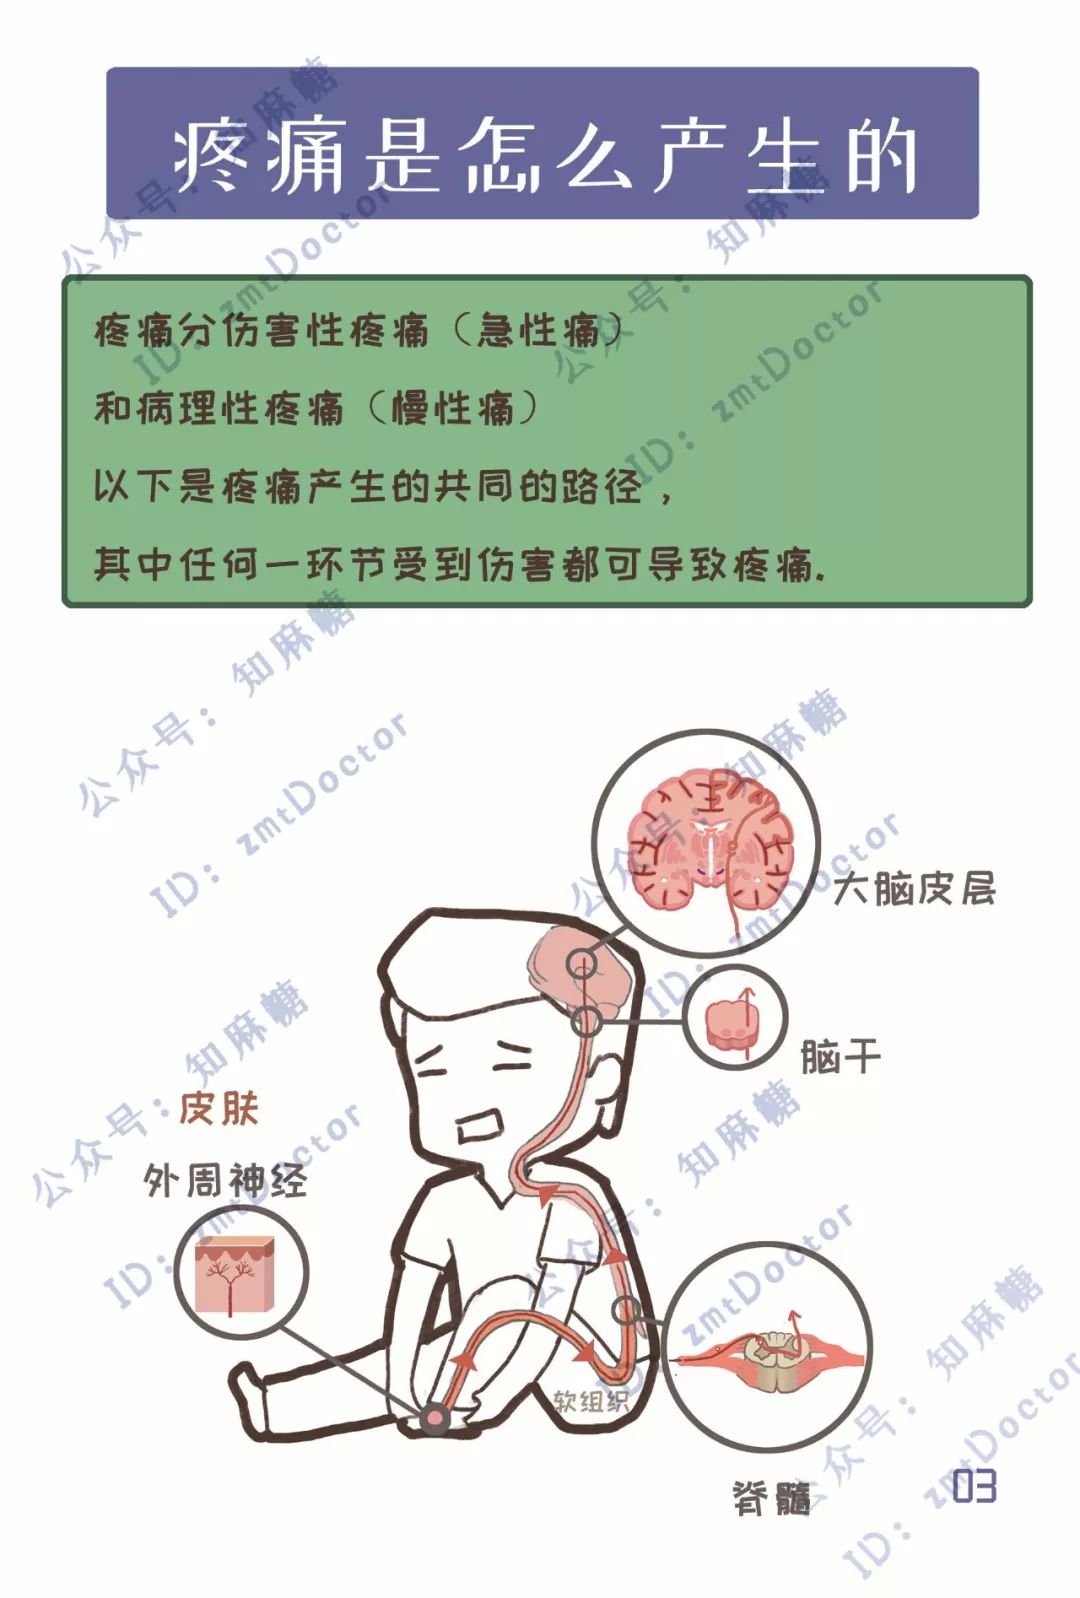 下载电子版 ||疼痛漫画科普宣传册！助力宣传中国疼痛周！_印刷